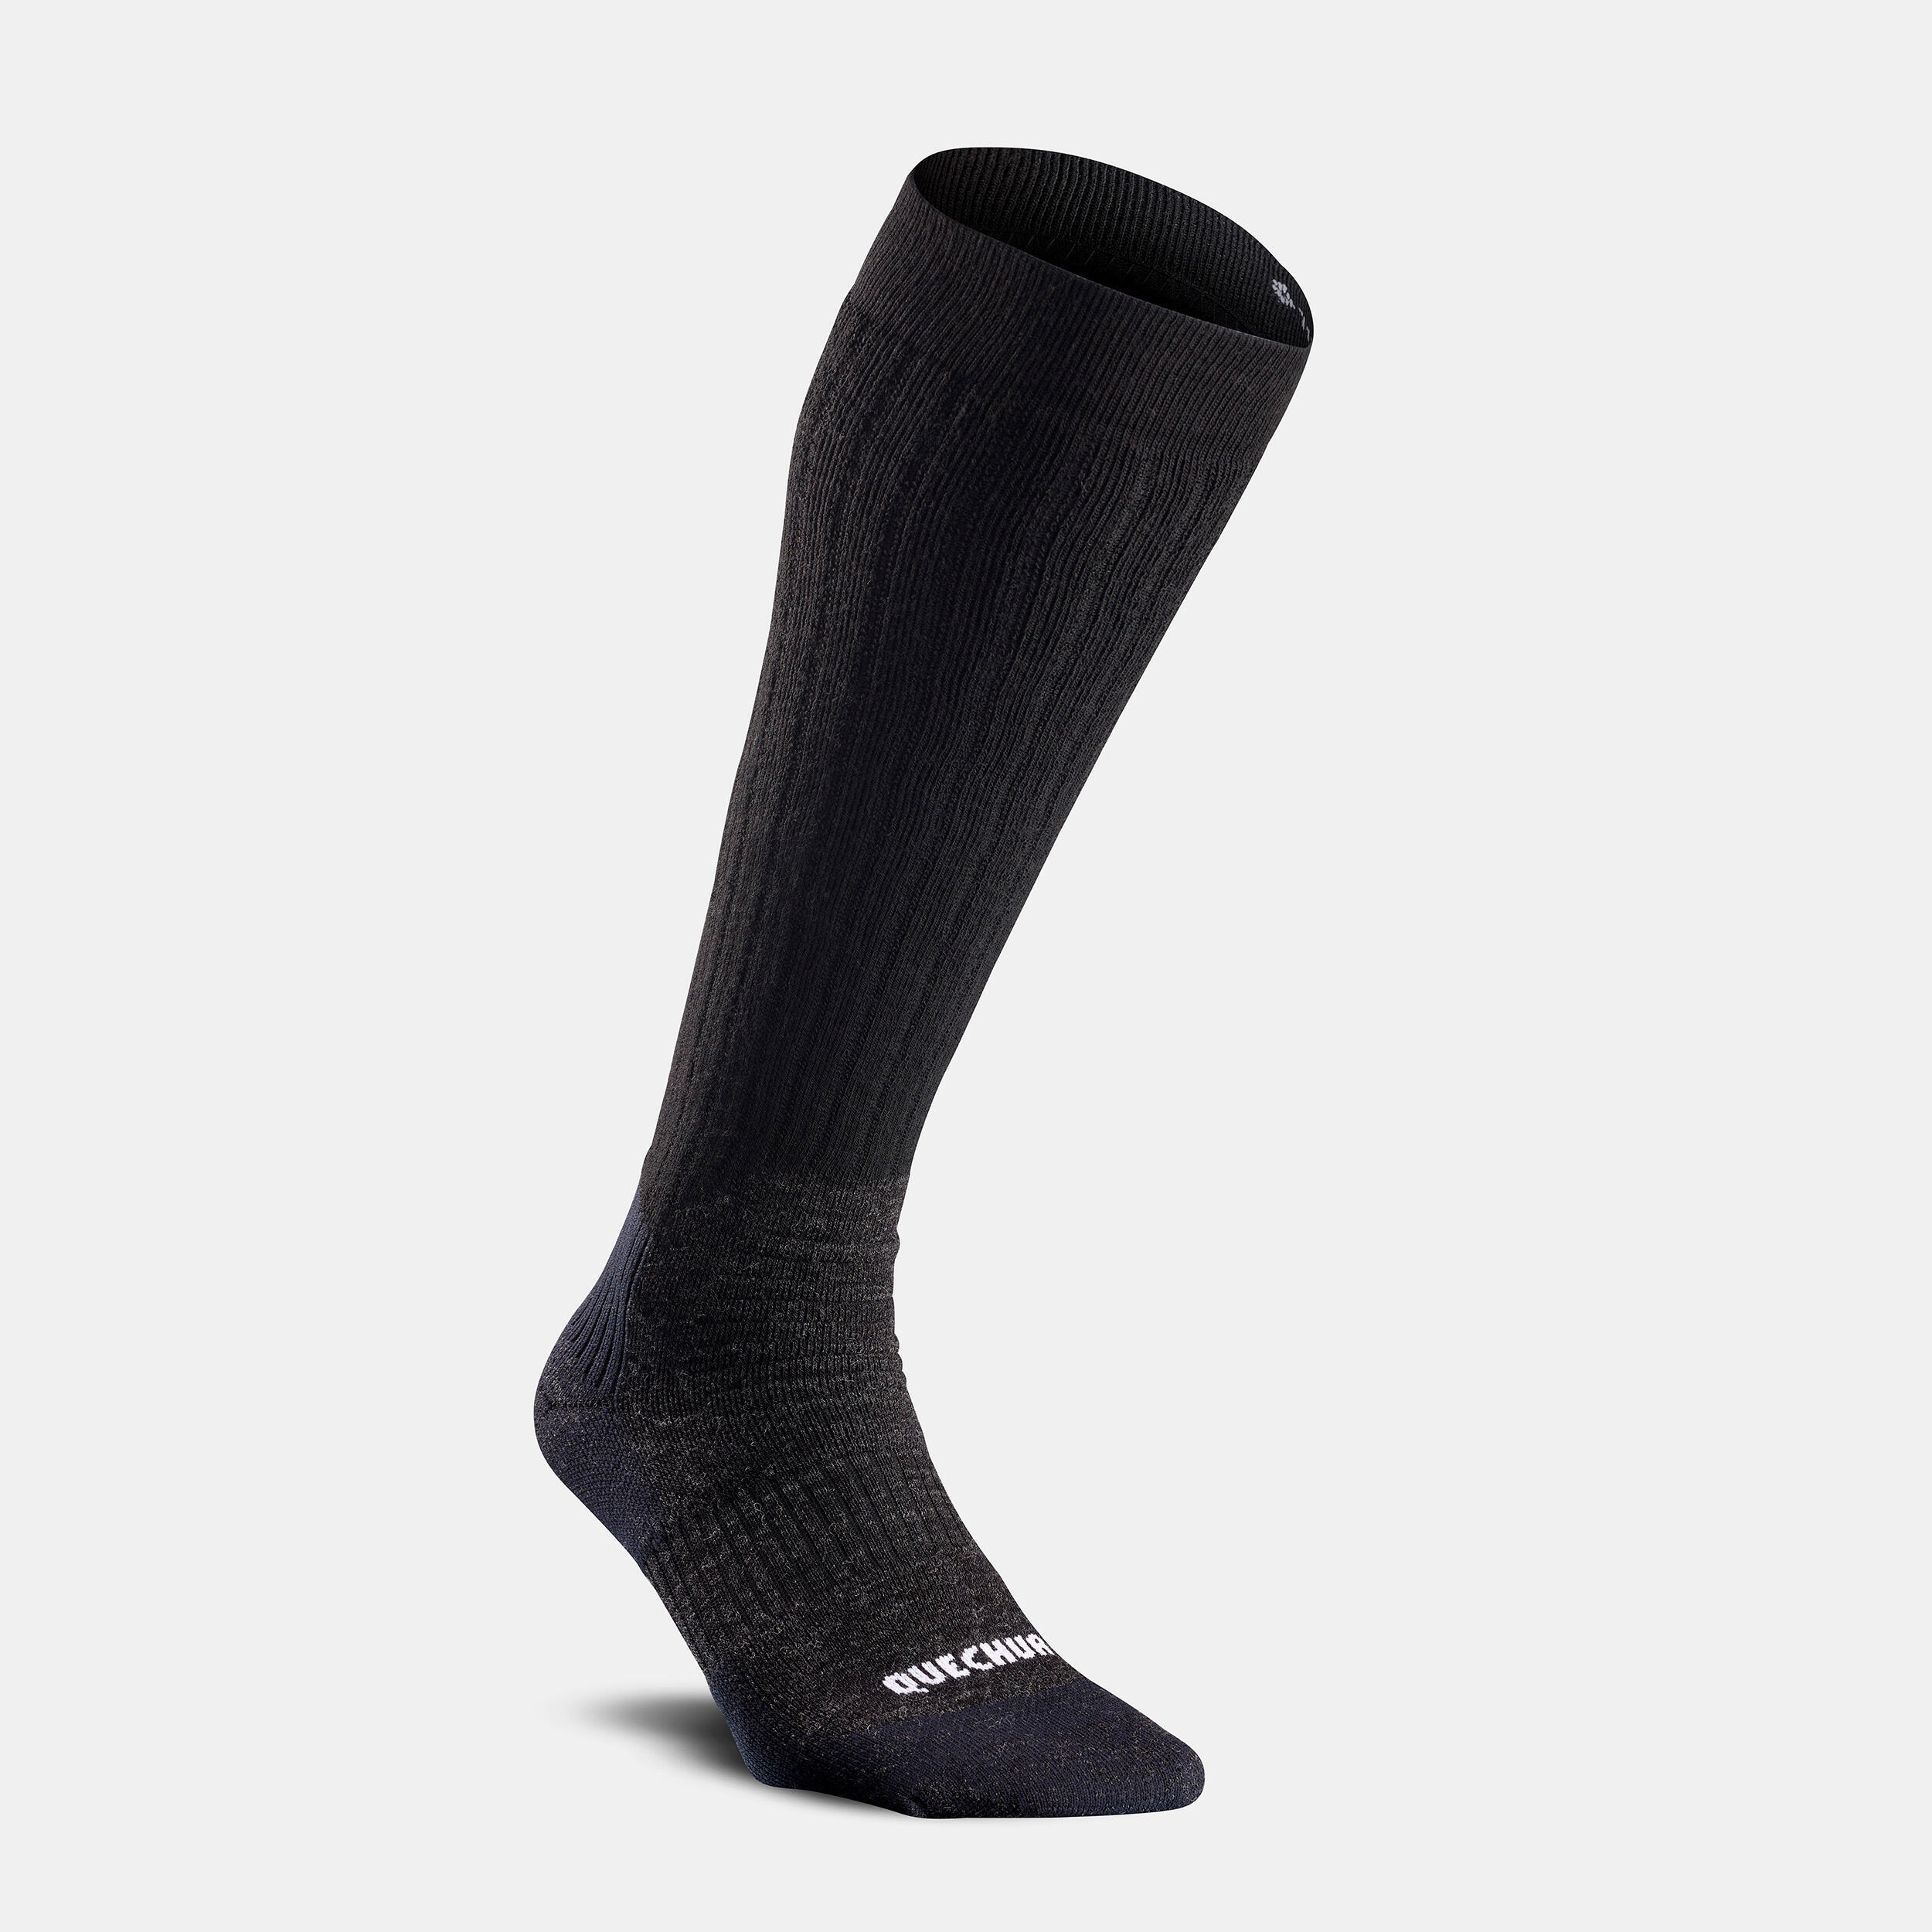 Warm Hiking Socks - SH100 X-WARM HAUTES - 2 Pairs 3/6